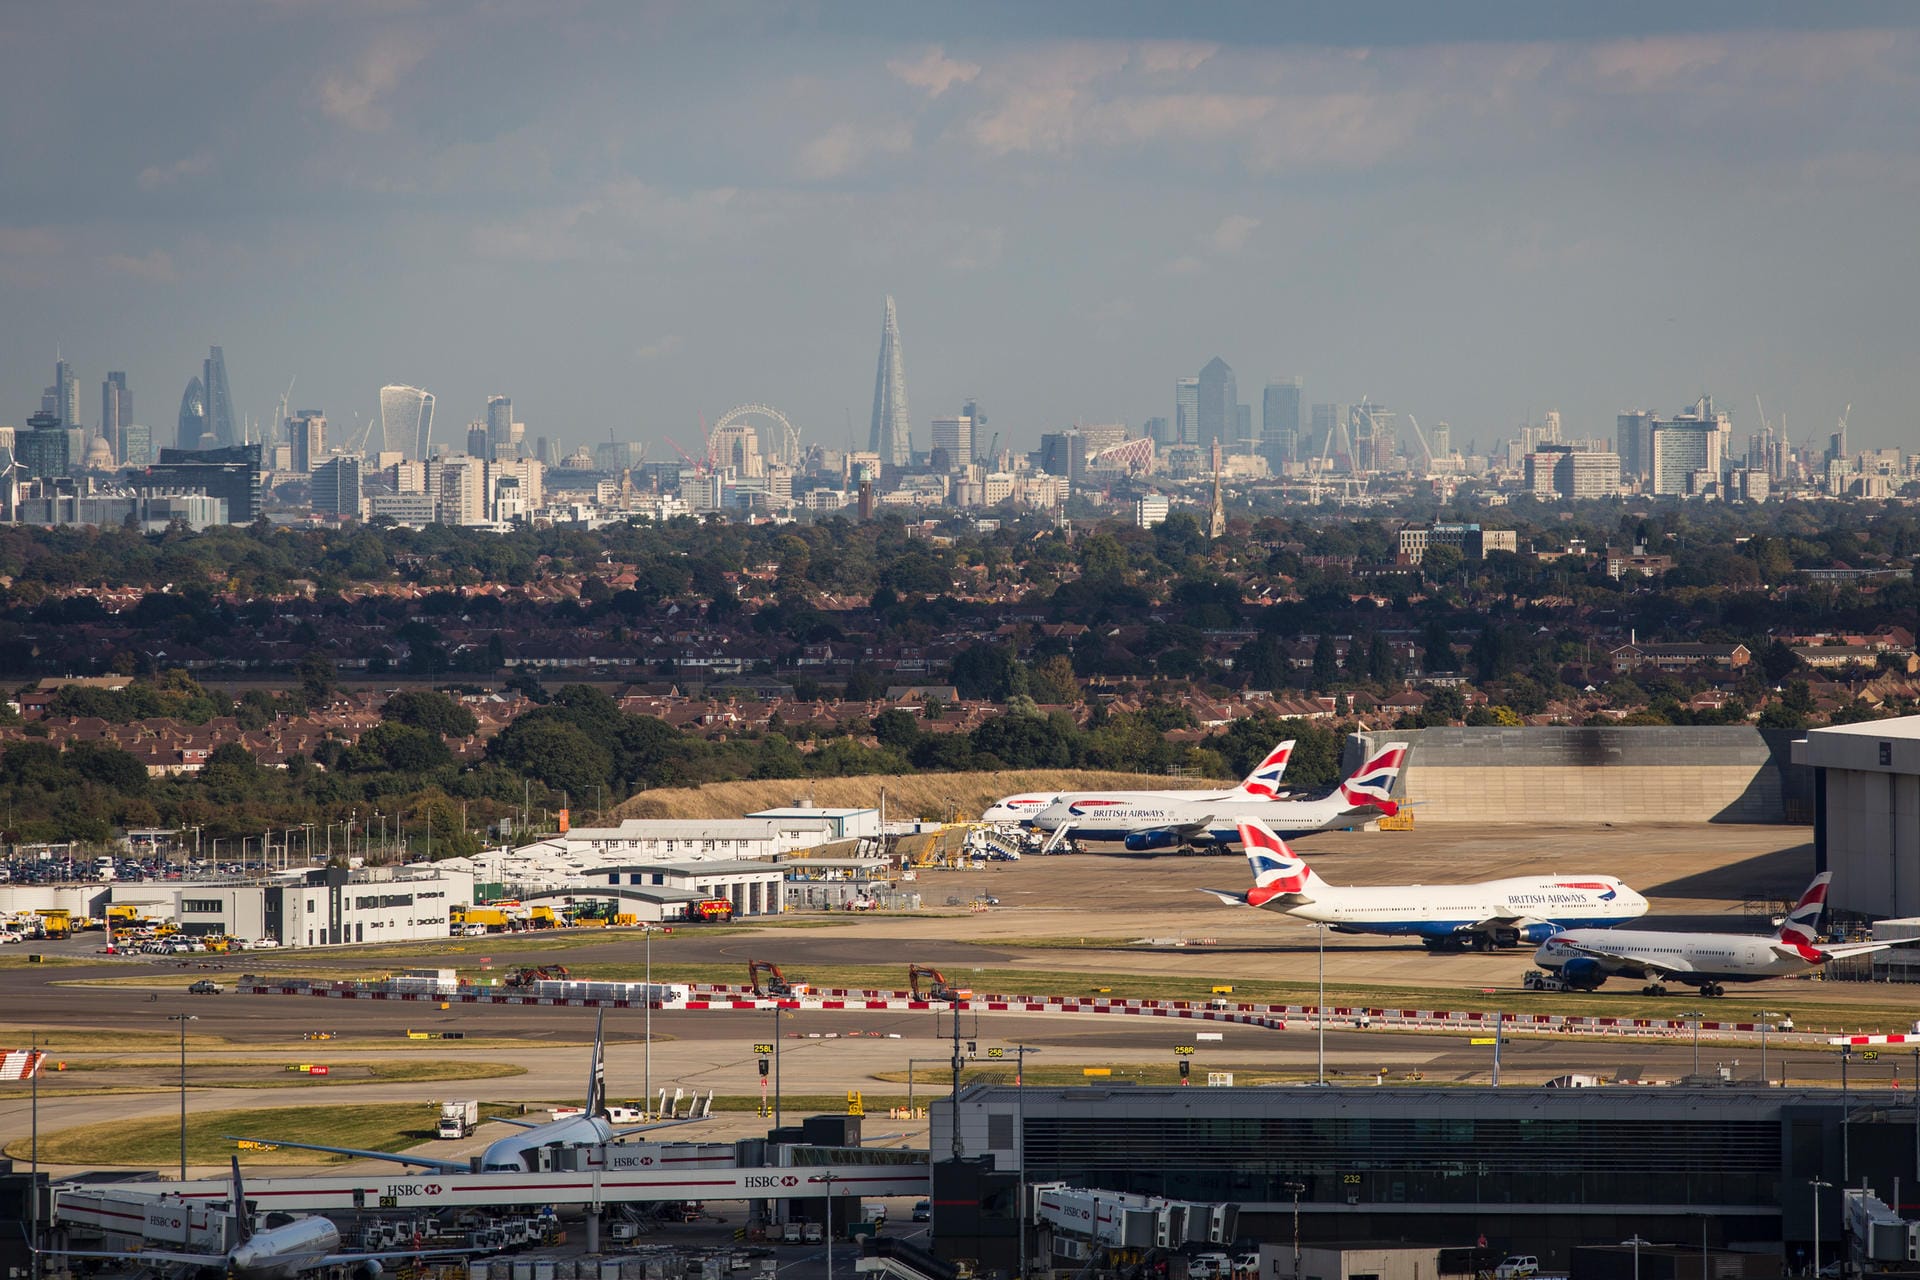 Flughafen London Heathrow: Im Hintergrund ist das 25 Kilometer entfernte London zu sehen.